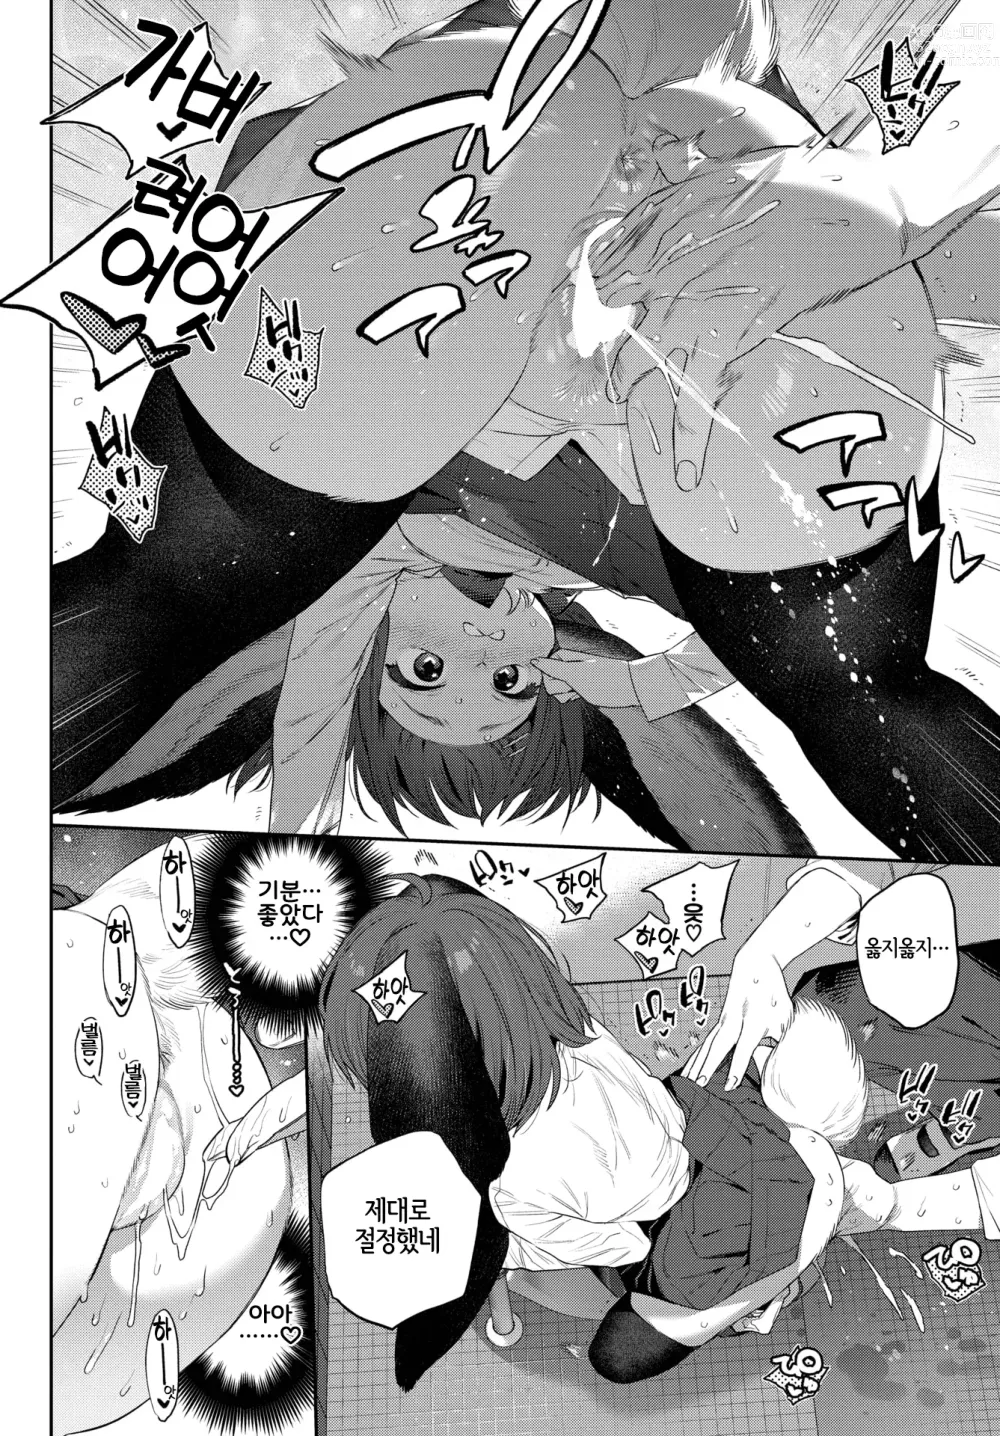 Page 10 of manga 발정인외일지 1페이지째